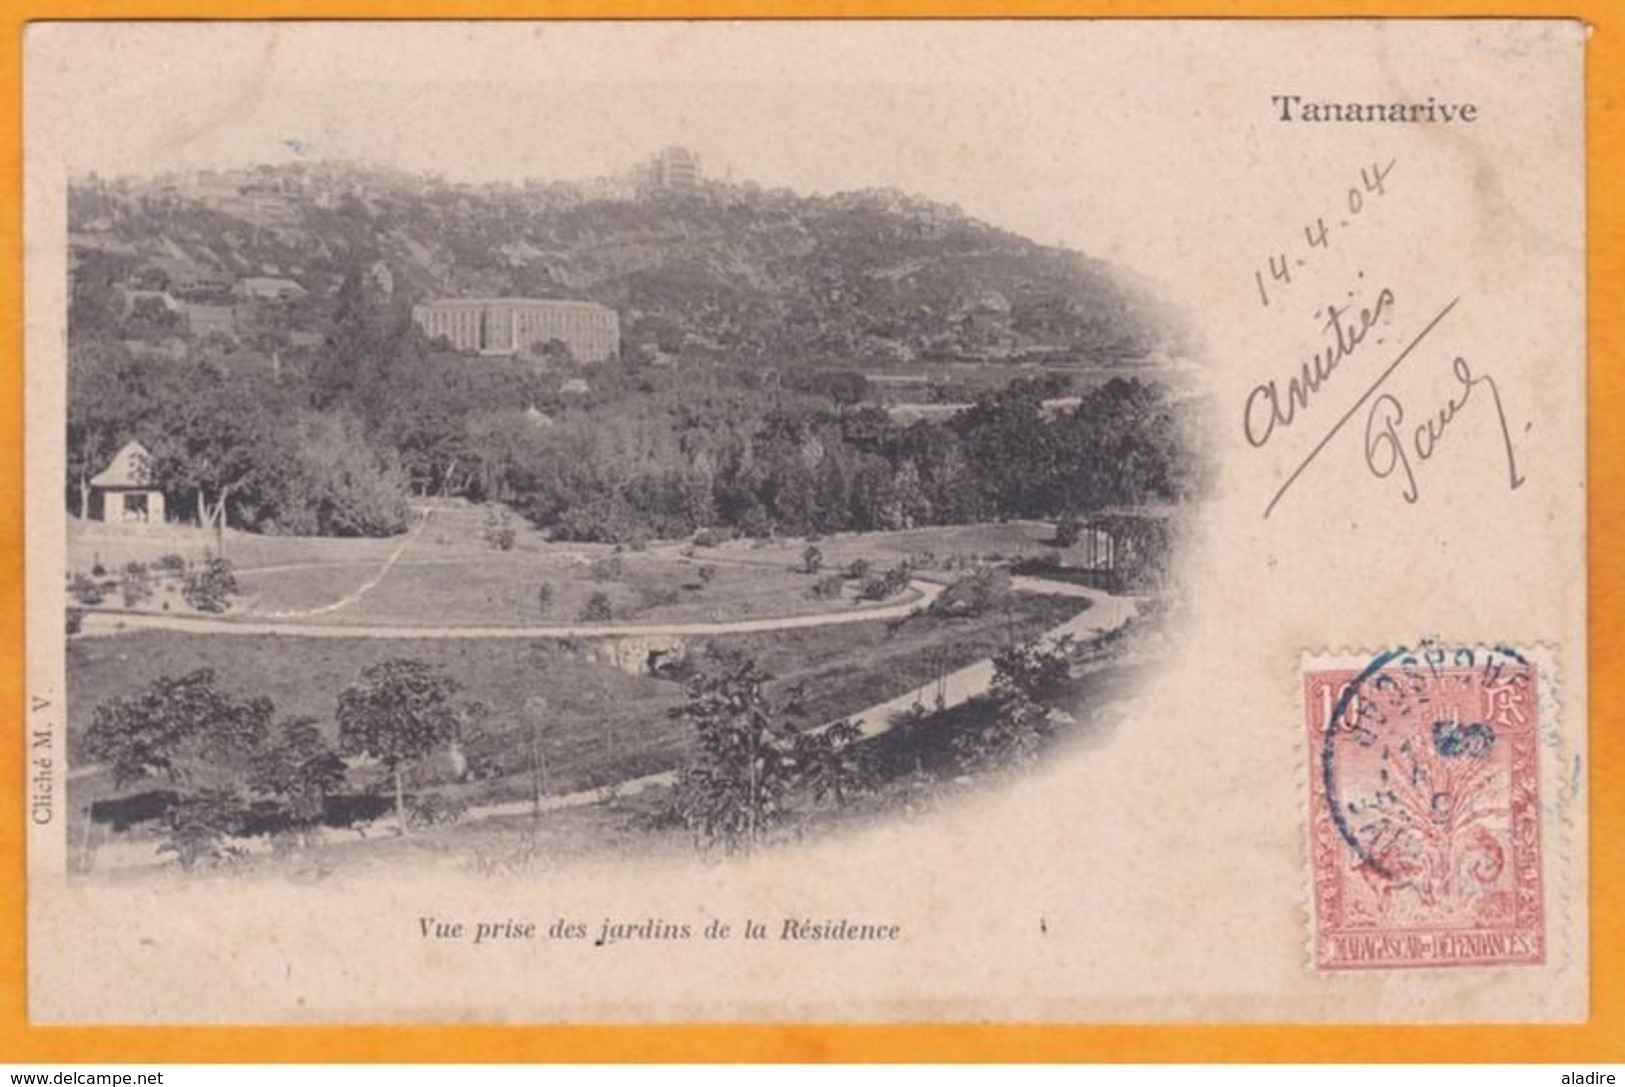 1904 - Carte Postale De Tananarive, Madagascar Vers Saint Mandé, Seine, France  - Affrt 10 C Arbre Du Voyageur - Lettres & Documents